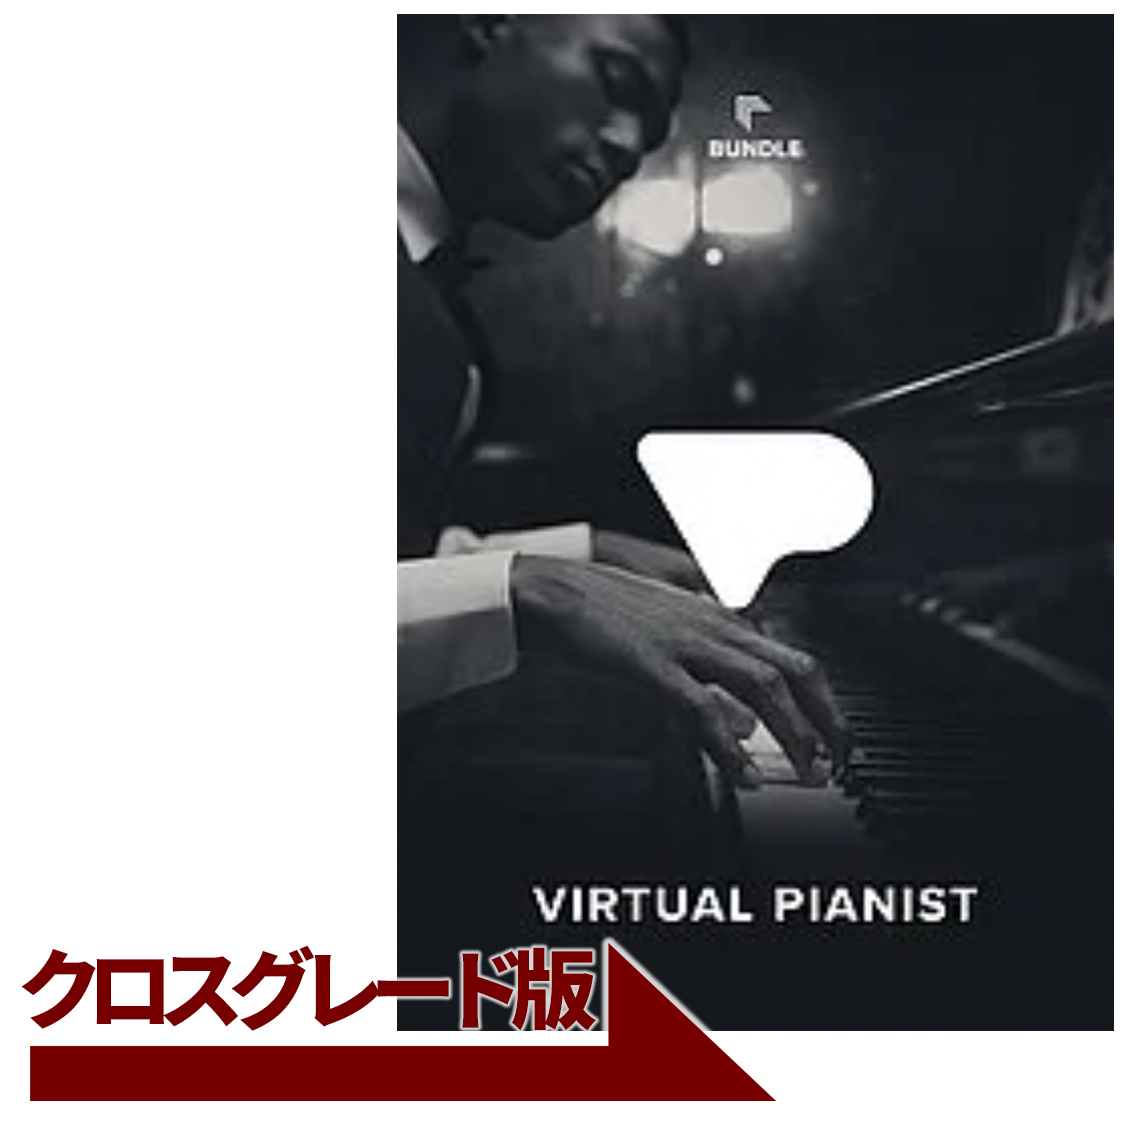 Virtual Pianist Bundle クロスグレード